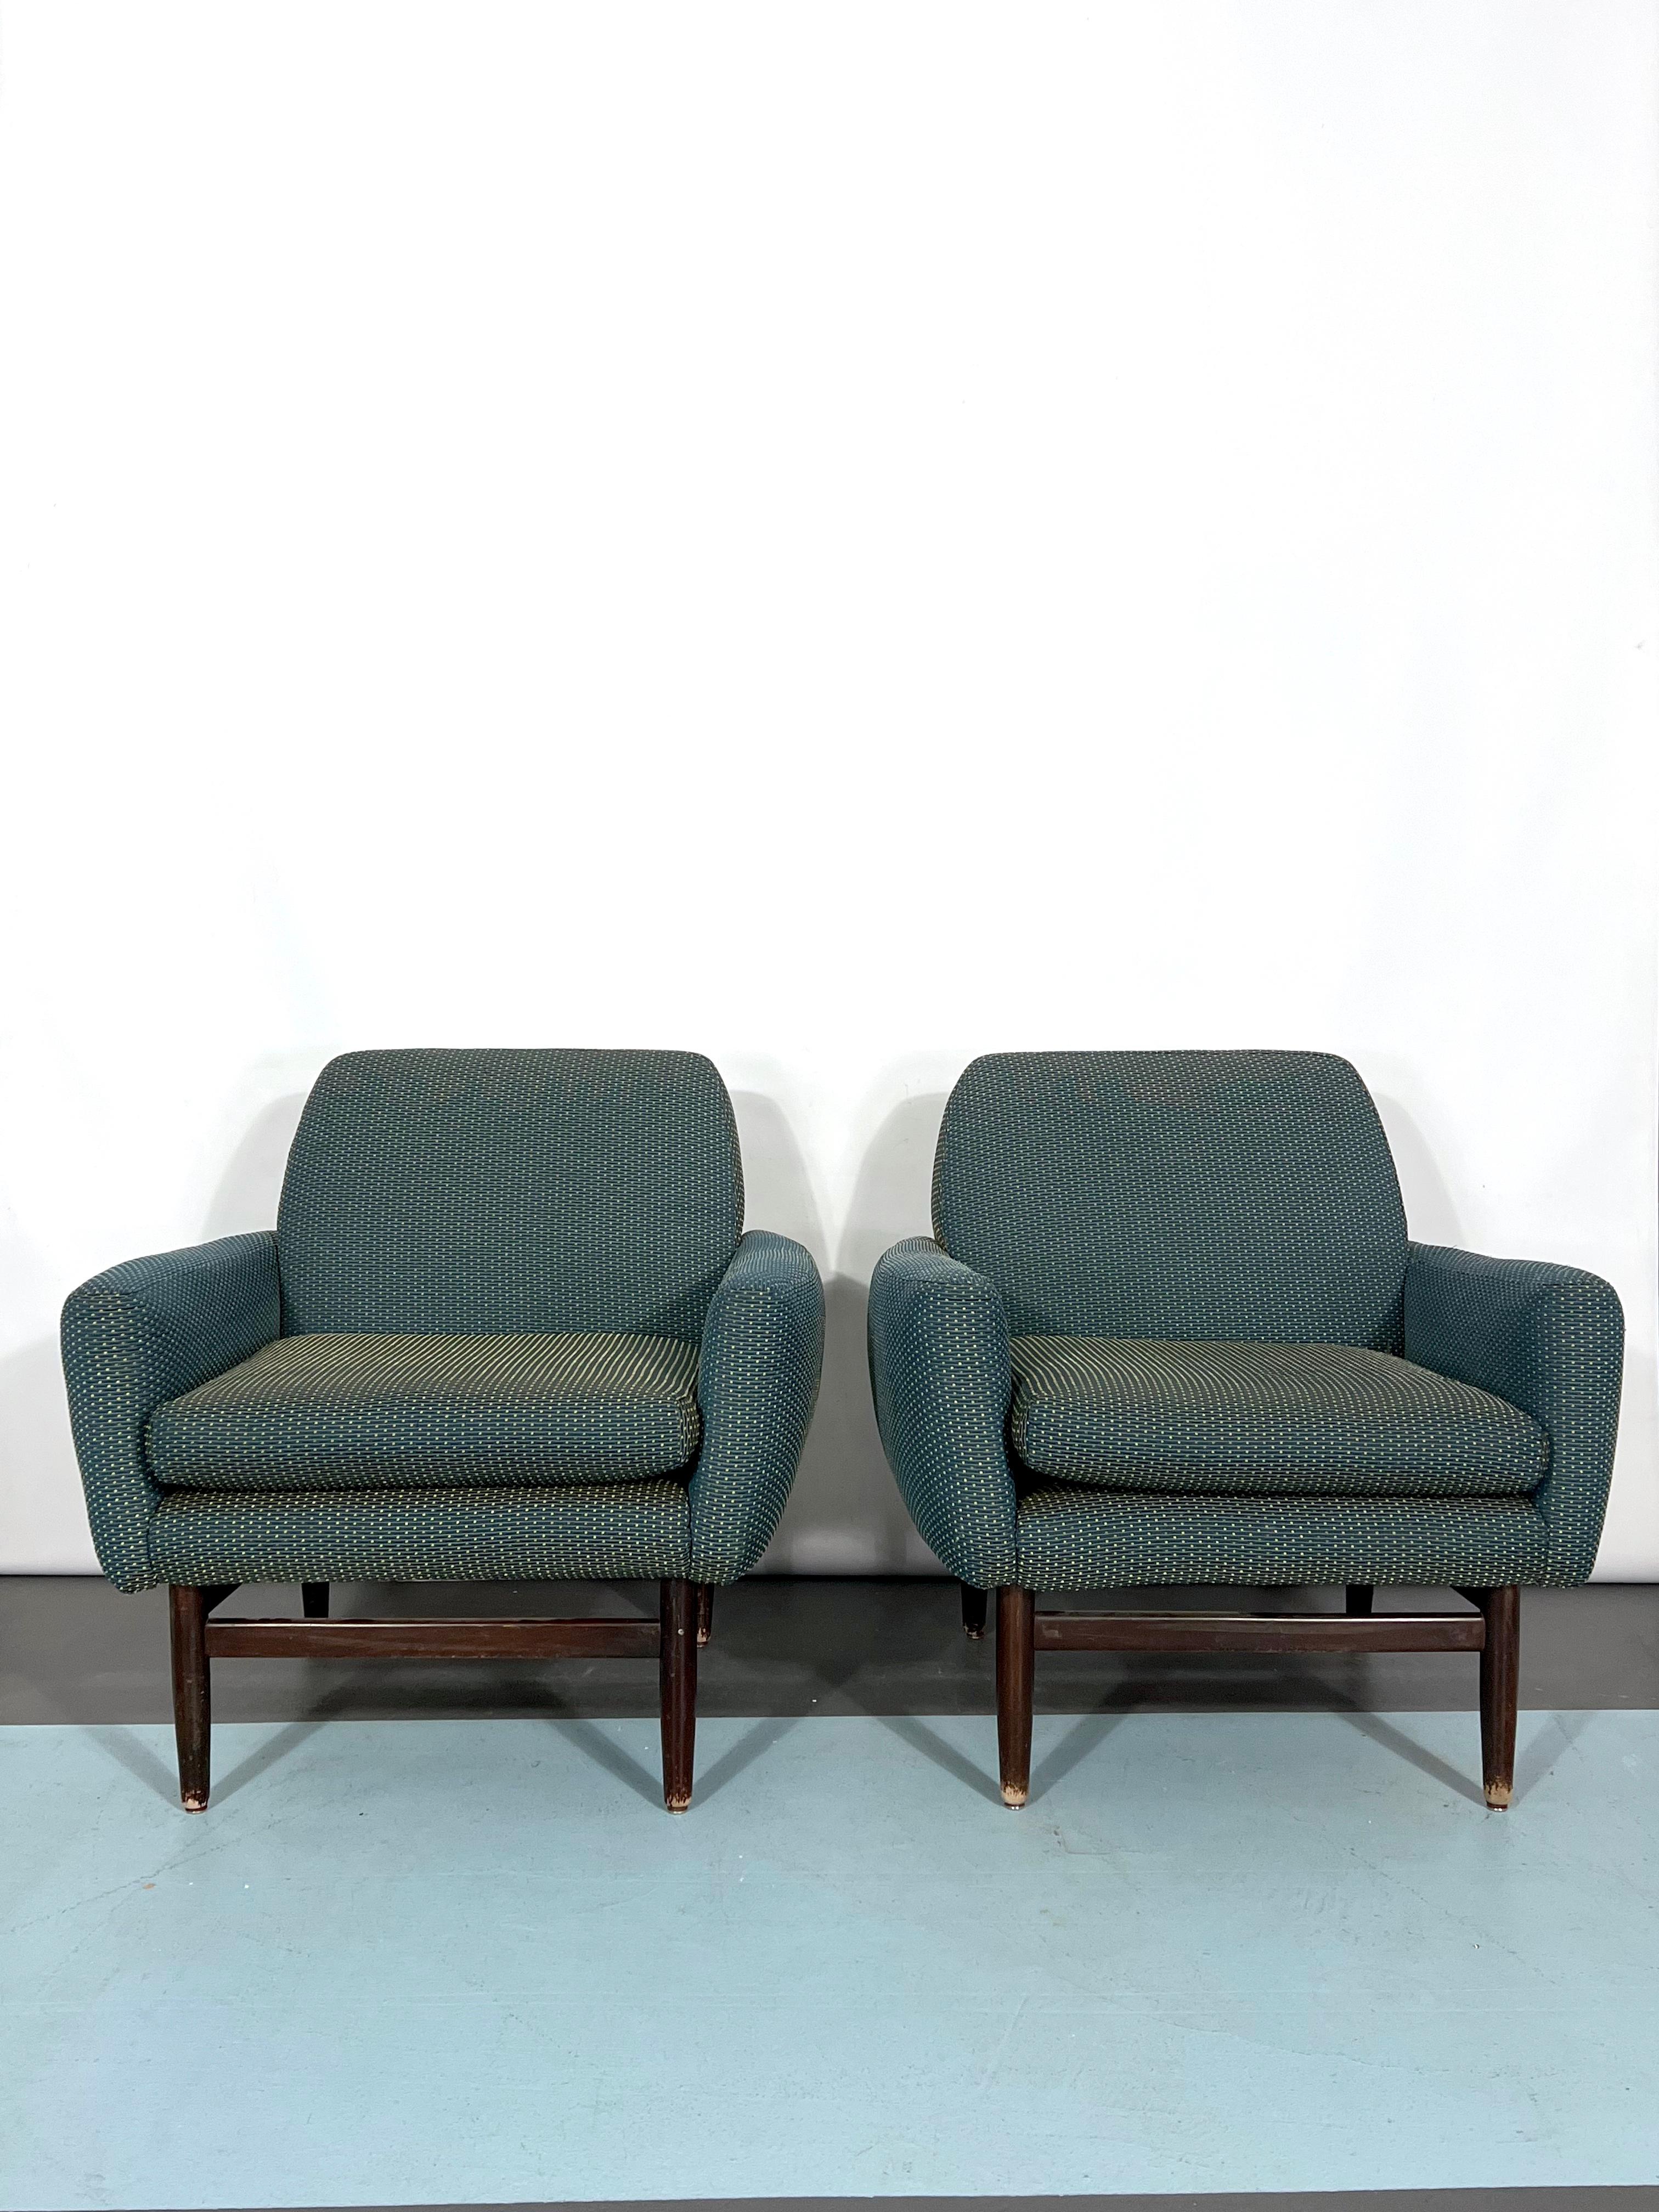 Très bon état vintage pour cet ensemble de deux fauteuils italiens fabriqués en Italie dans les années 60 et faits de tissu et de bois avec des détails en métal dans les pieds.